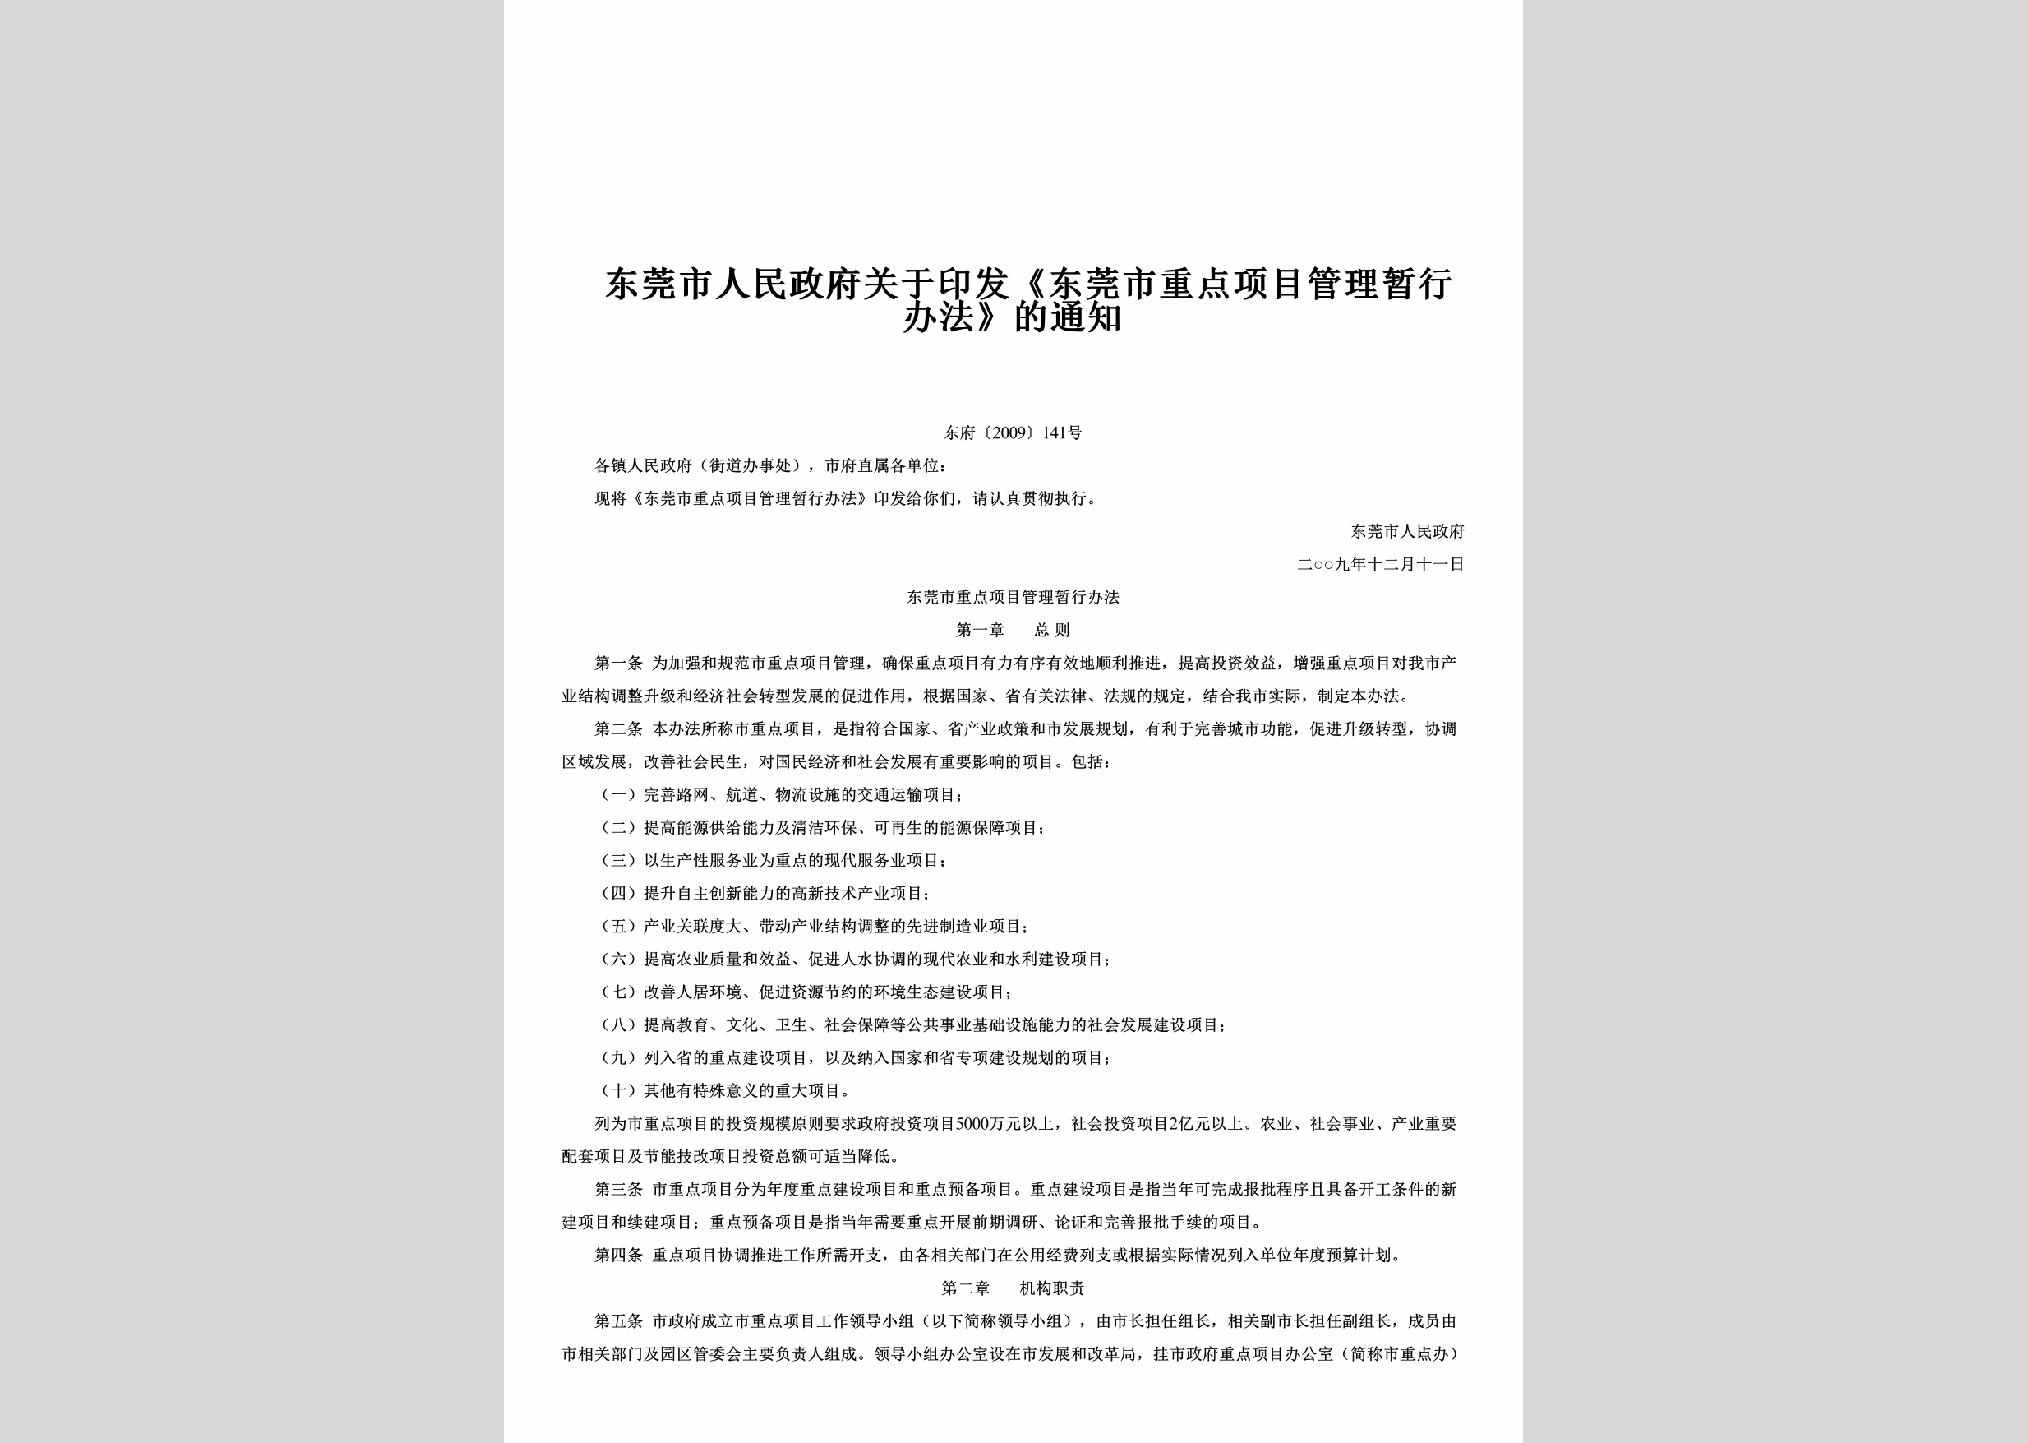 东府[2009]141号：关于印发《东莞市重点项目管理暂行办法》的通知